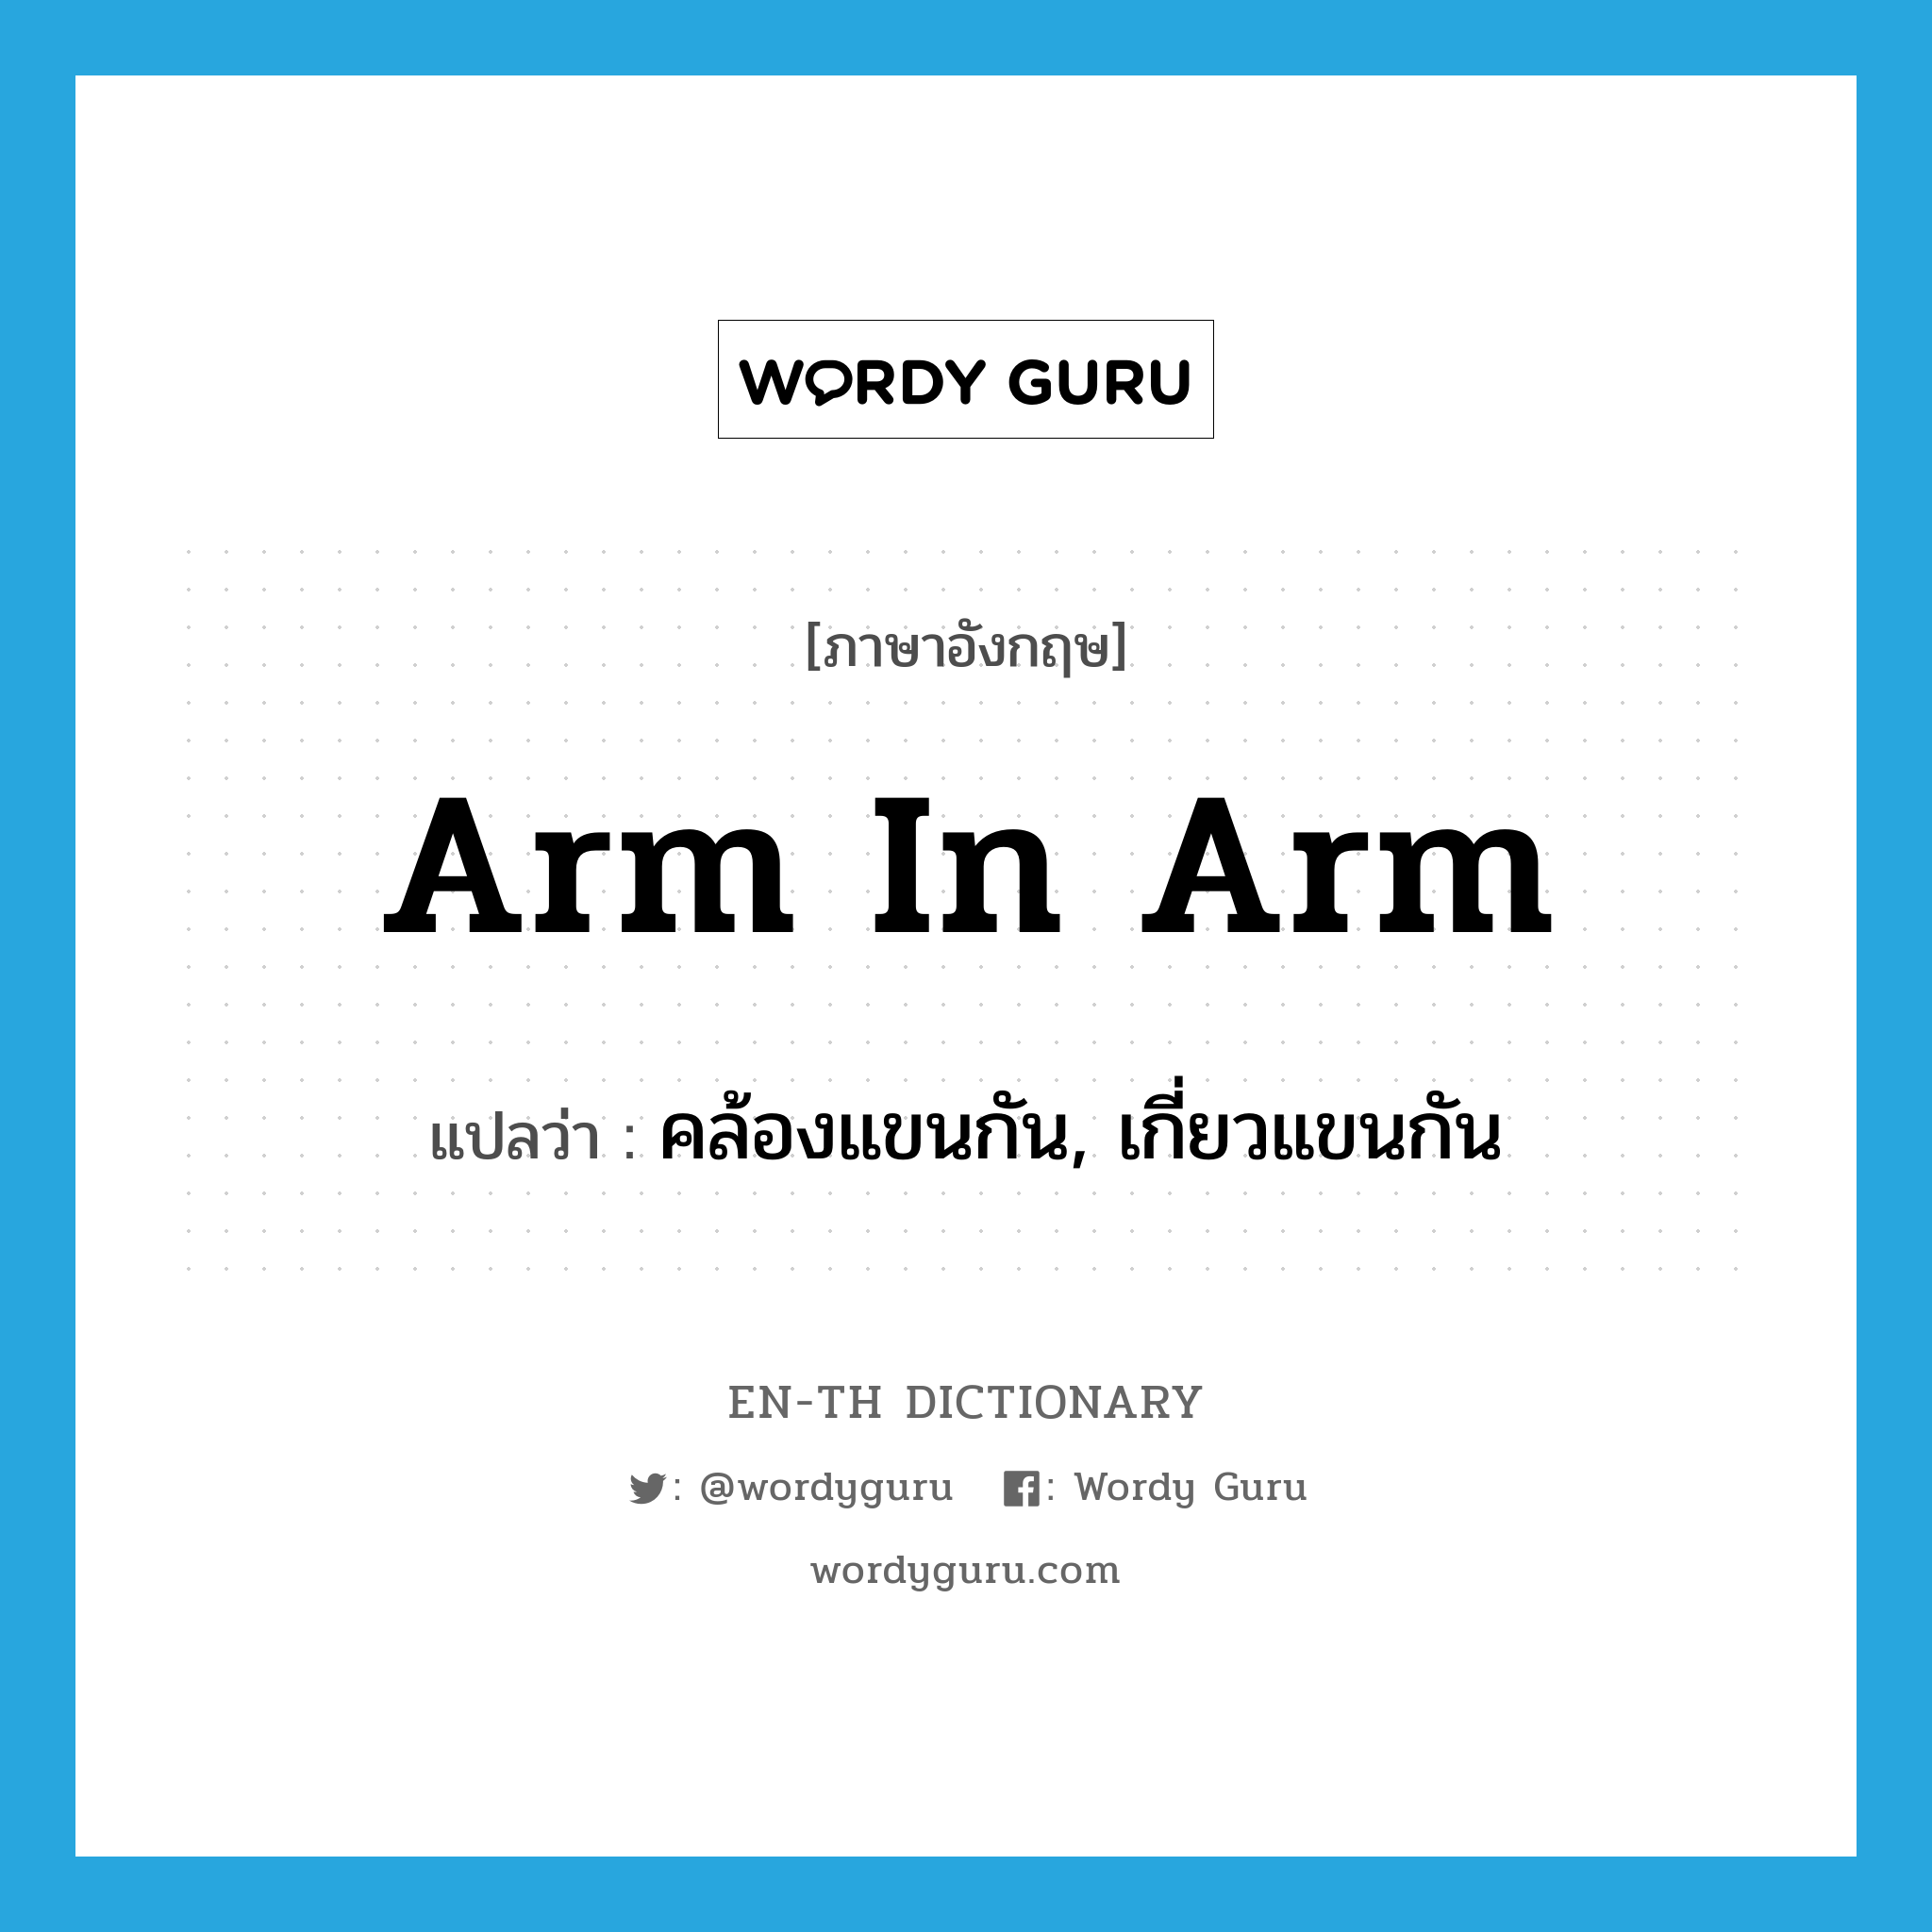 คล้องแขนกัน, เกี่ยวแขนกัน ภาษาอังกฤษ?, คำศัพท์ภาษาอังกฤษ คล้องแขนกัน, เกี่ยวแขนกัน แปลว่า arm in arm ประเภท IDM หมวด IDM